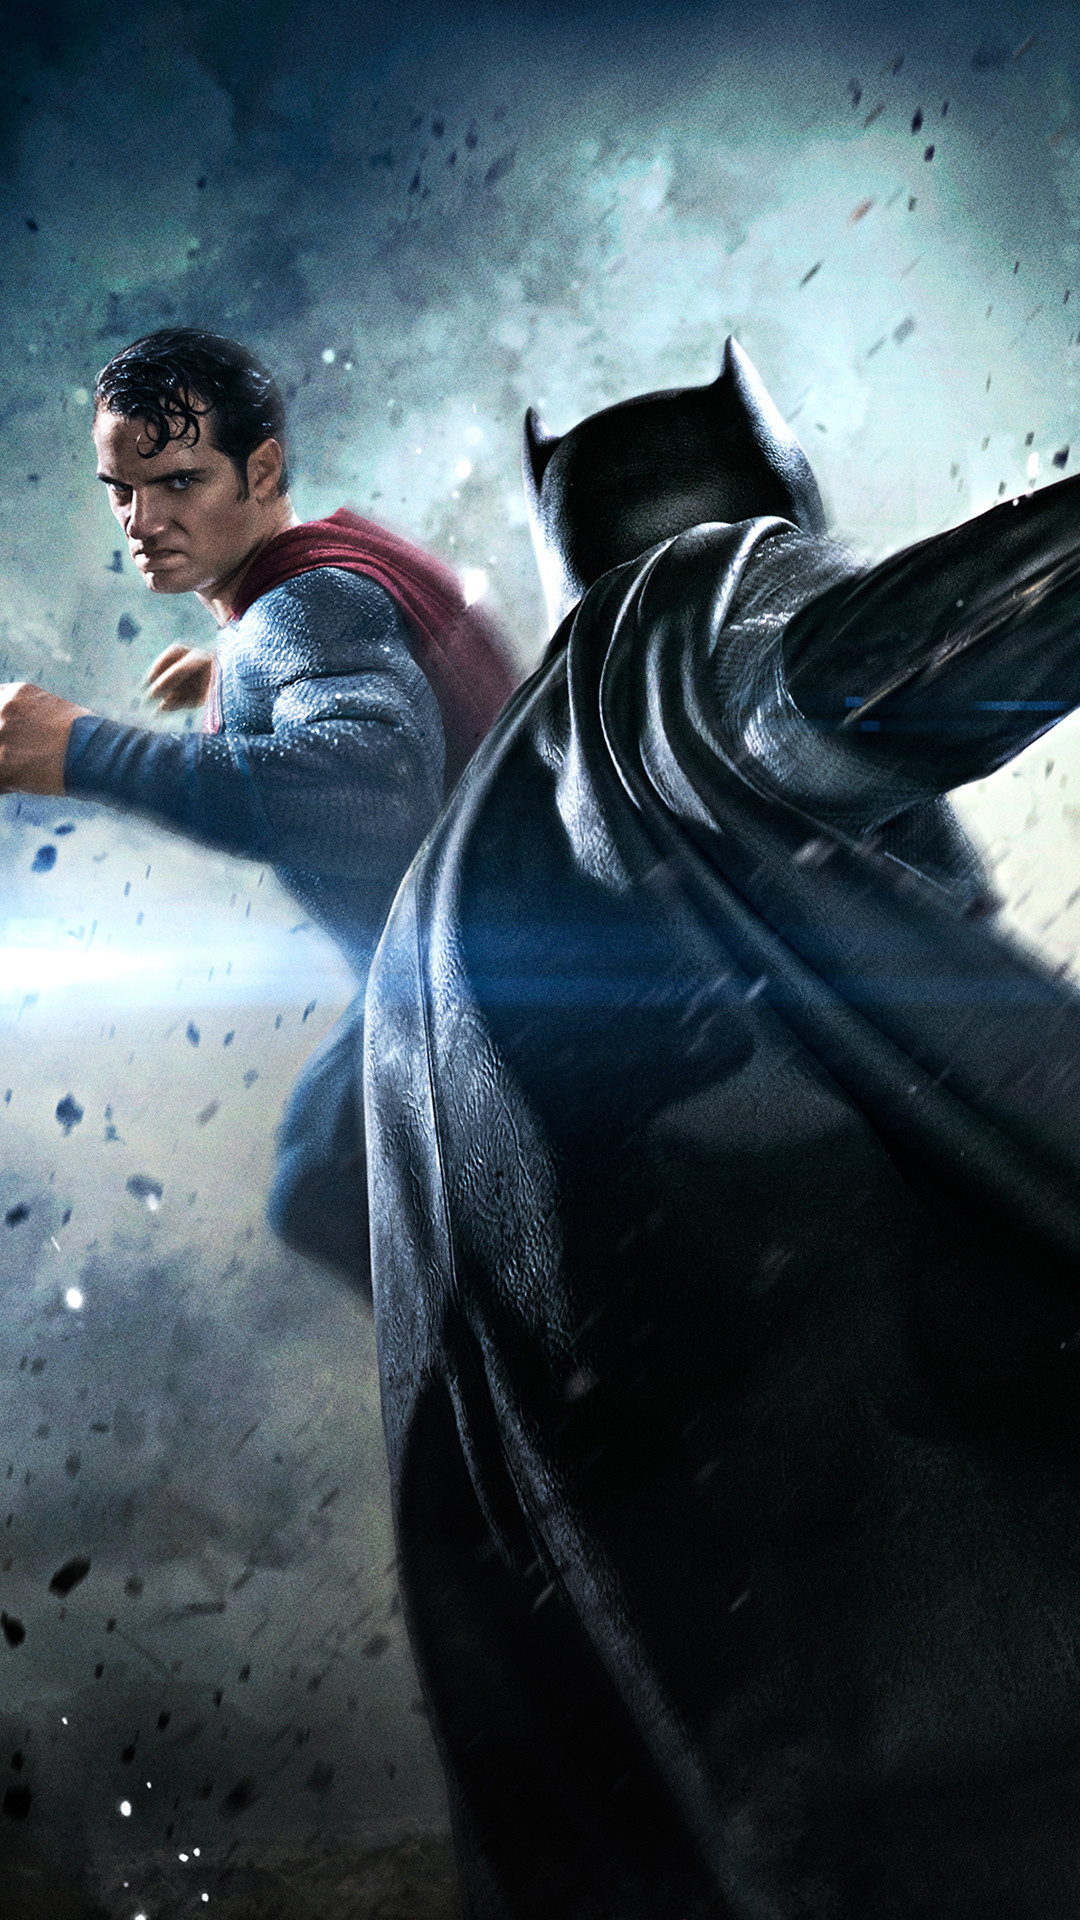 1080x1920 Batman vs Superman Movie Fight iPhone 6 Plus HD Wallpaper ...